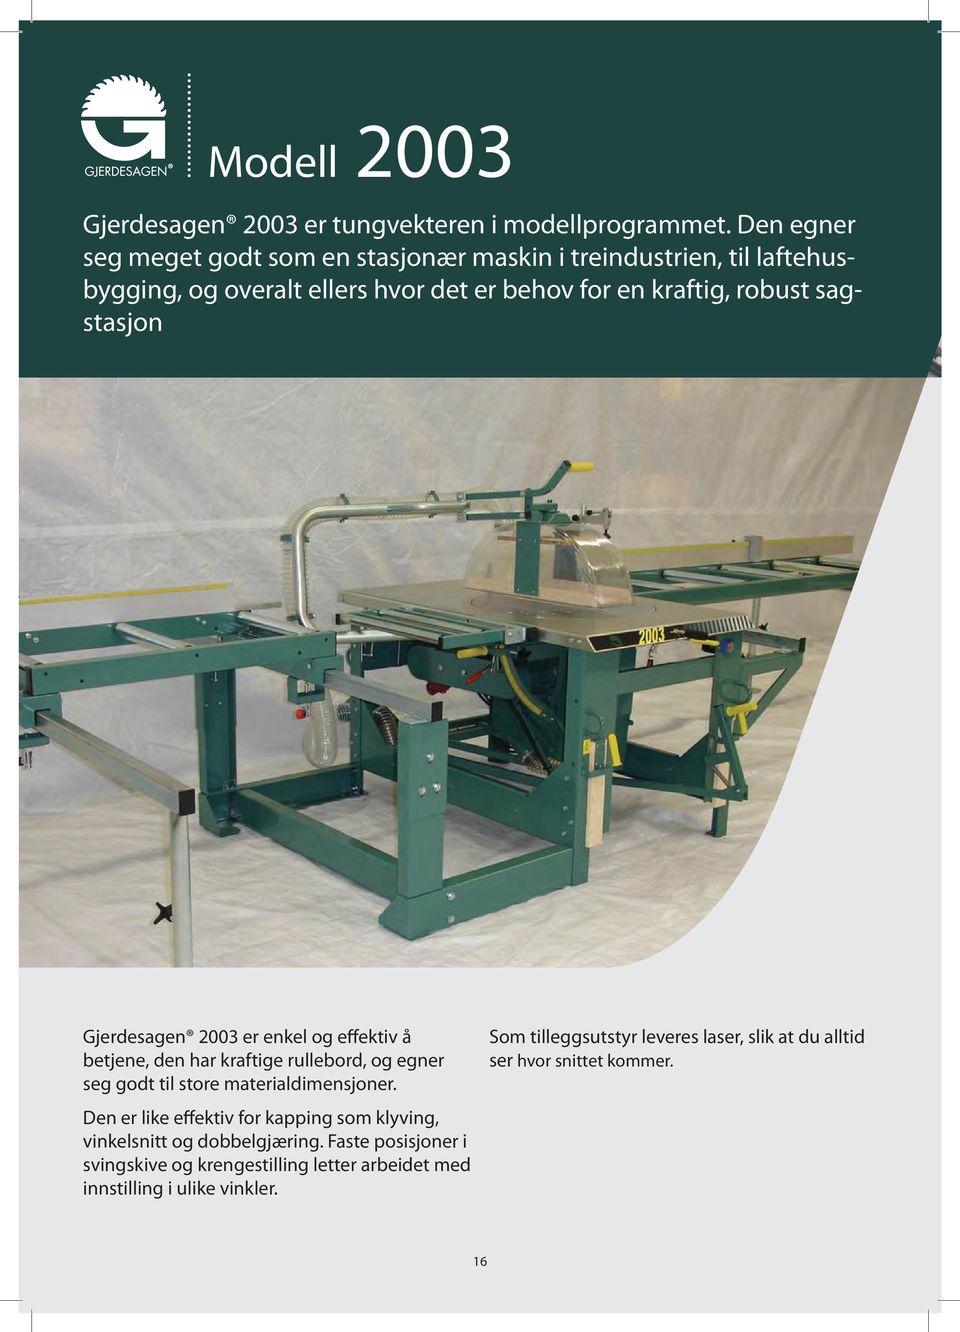 sagstasjon Gjerdesagen 2003 er enkel og effektiv å betjene, den har kraftige rullebord, og egner seg godt til store materialdimensjoner.